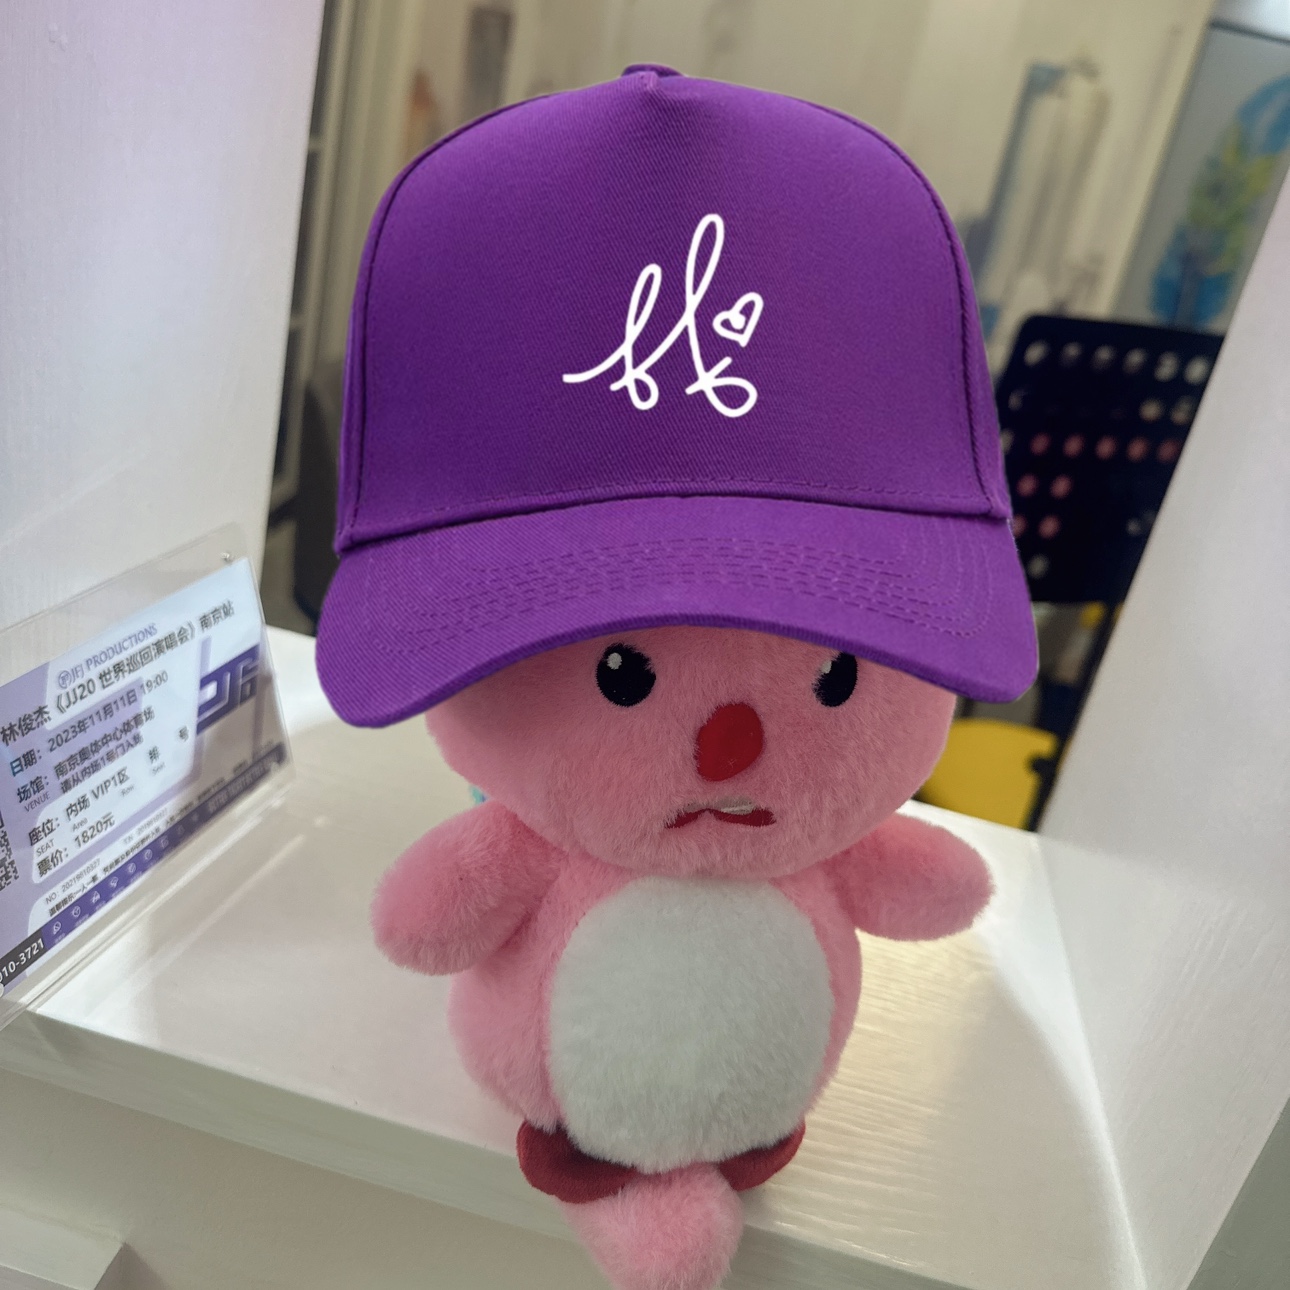 老林俊杰JJ20世界演唱会smg圣所周边同款亲笔签名粉紫色应援帽子 - 图2